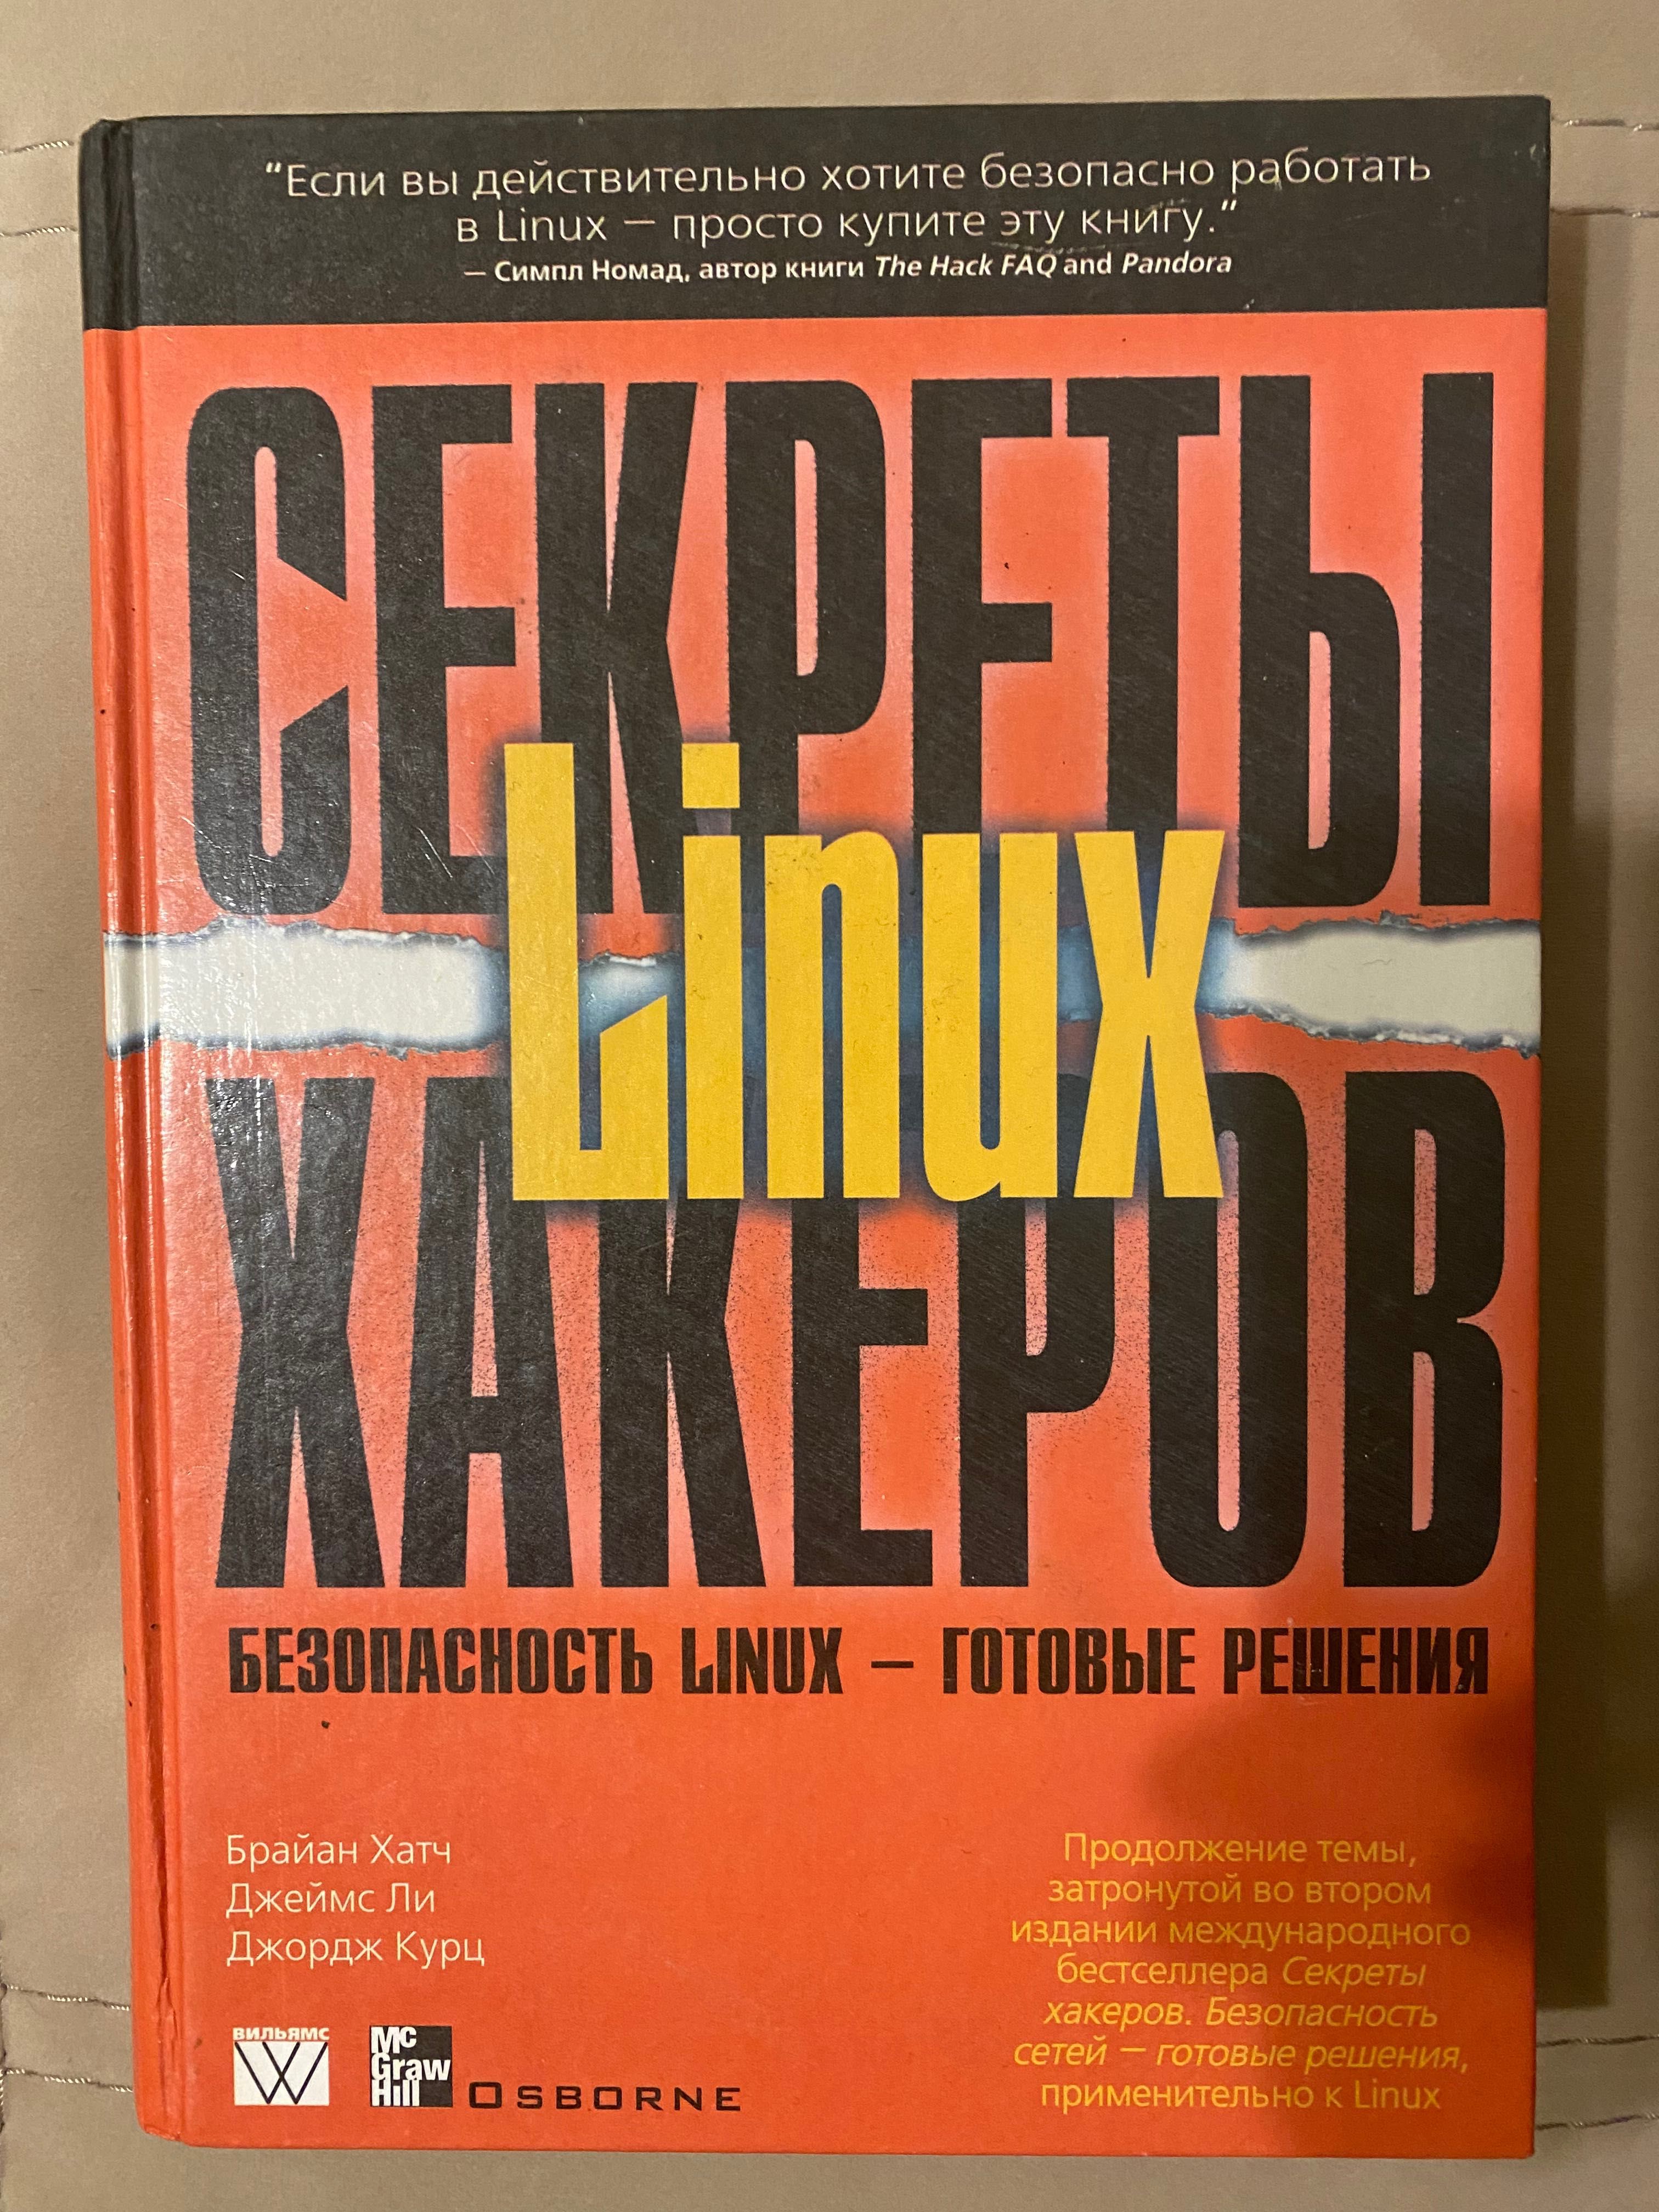 Книга "Секреты Linux хакеров"